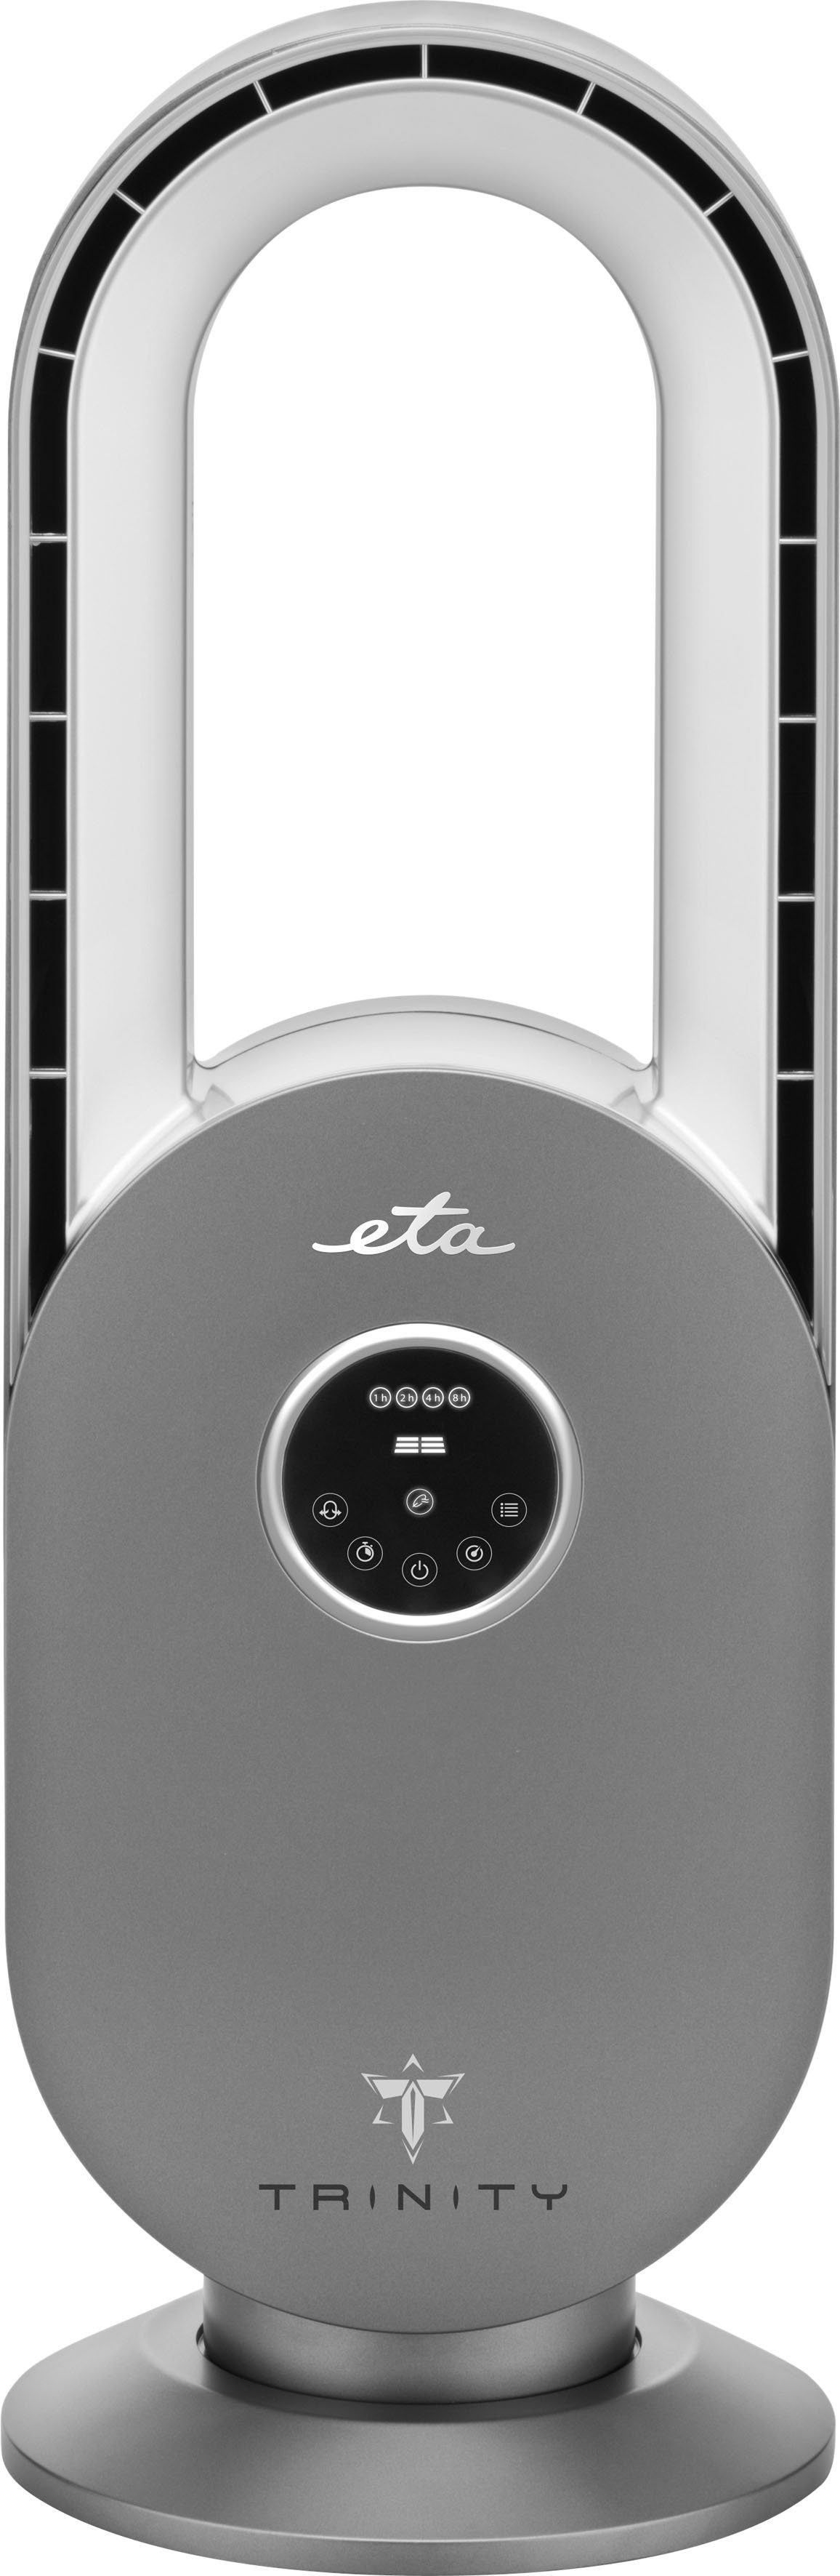 eta Tischventilator TRINITY und Timer, Oszillation, ETA360790000, 3 Programme, LED-Display Geschwindigkeiten